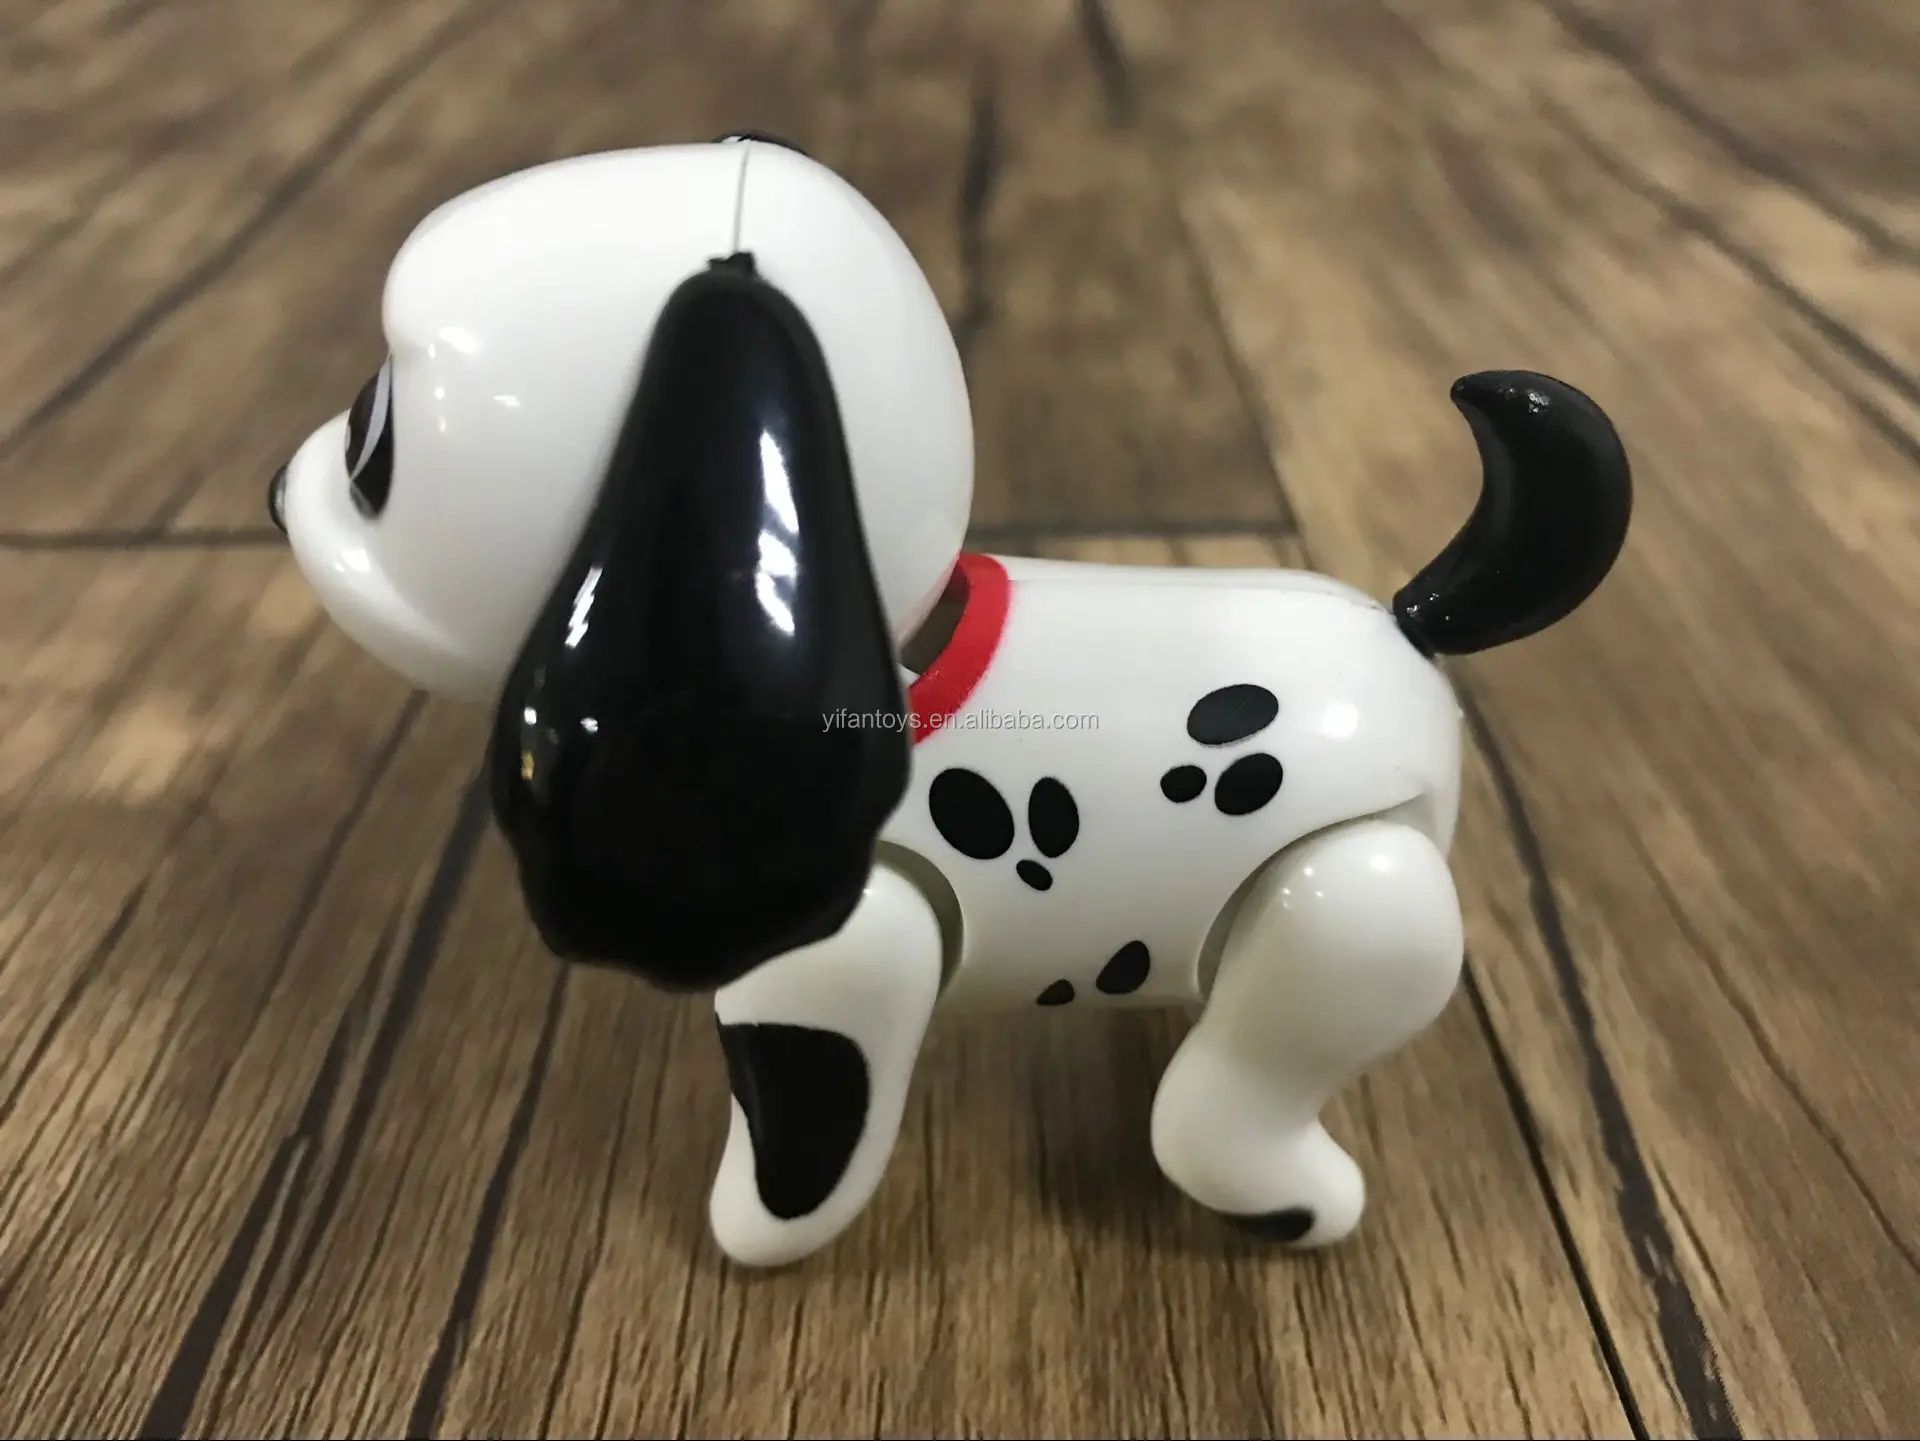 263キュートで面白い赤ちゃんの犬のペットが子供のギフトのためのミルクミニ犬のおもちゃを吸う Buy ミニ犬のおもちゃ 吸引ミルク犬 犬ペットおもちゃ Product On Alibaba Com